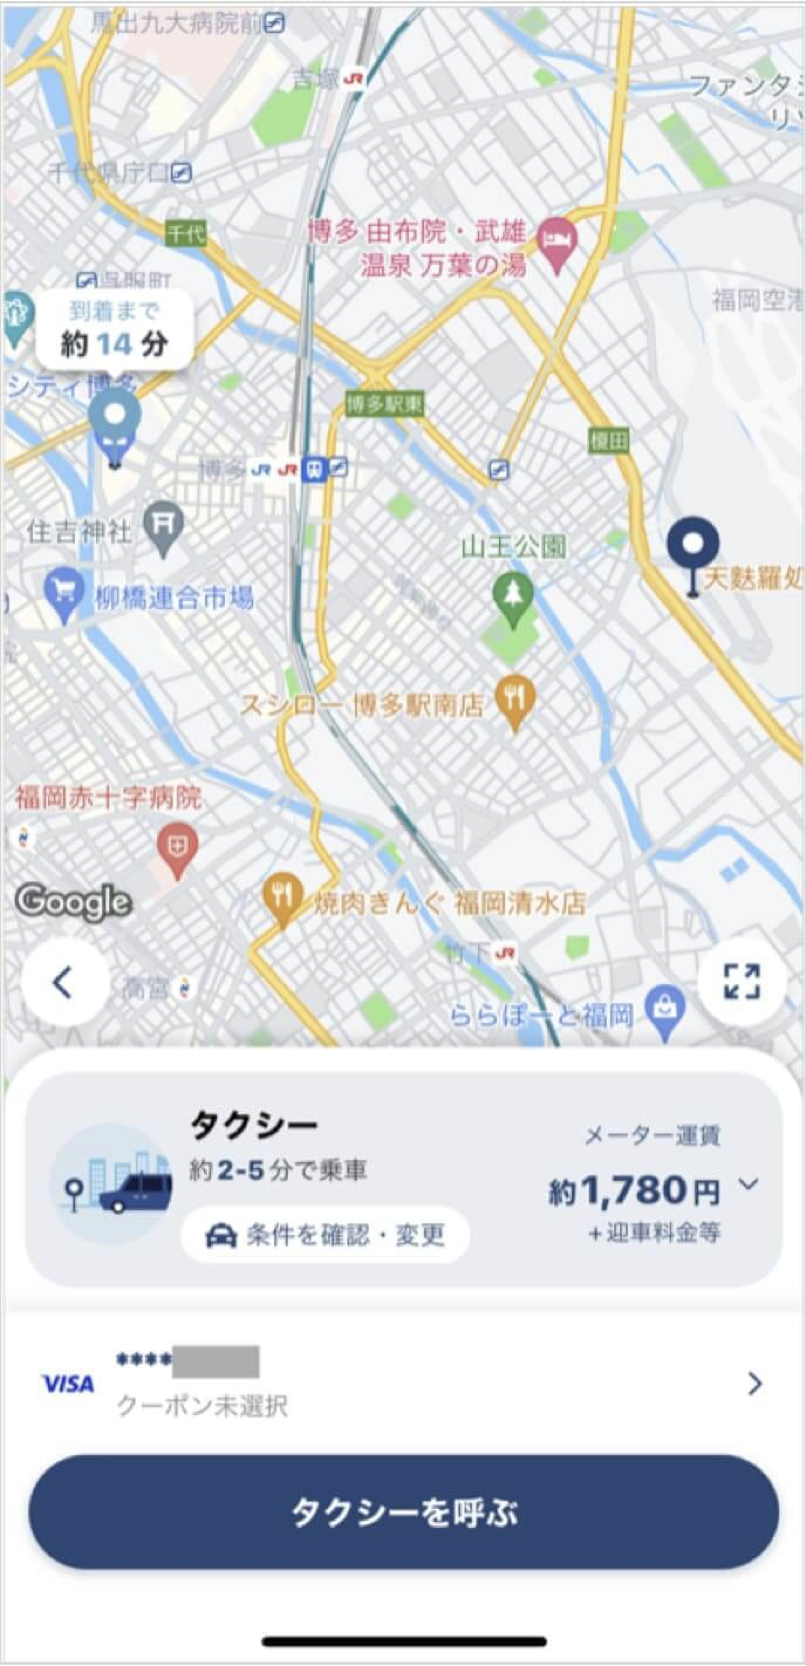 福岡空港からキャナルシティまでのタクシー料金・所要時間まとめ